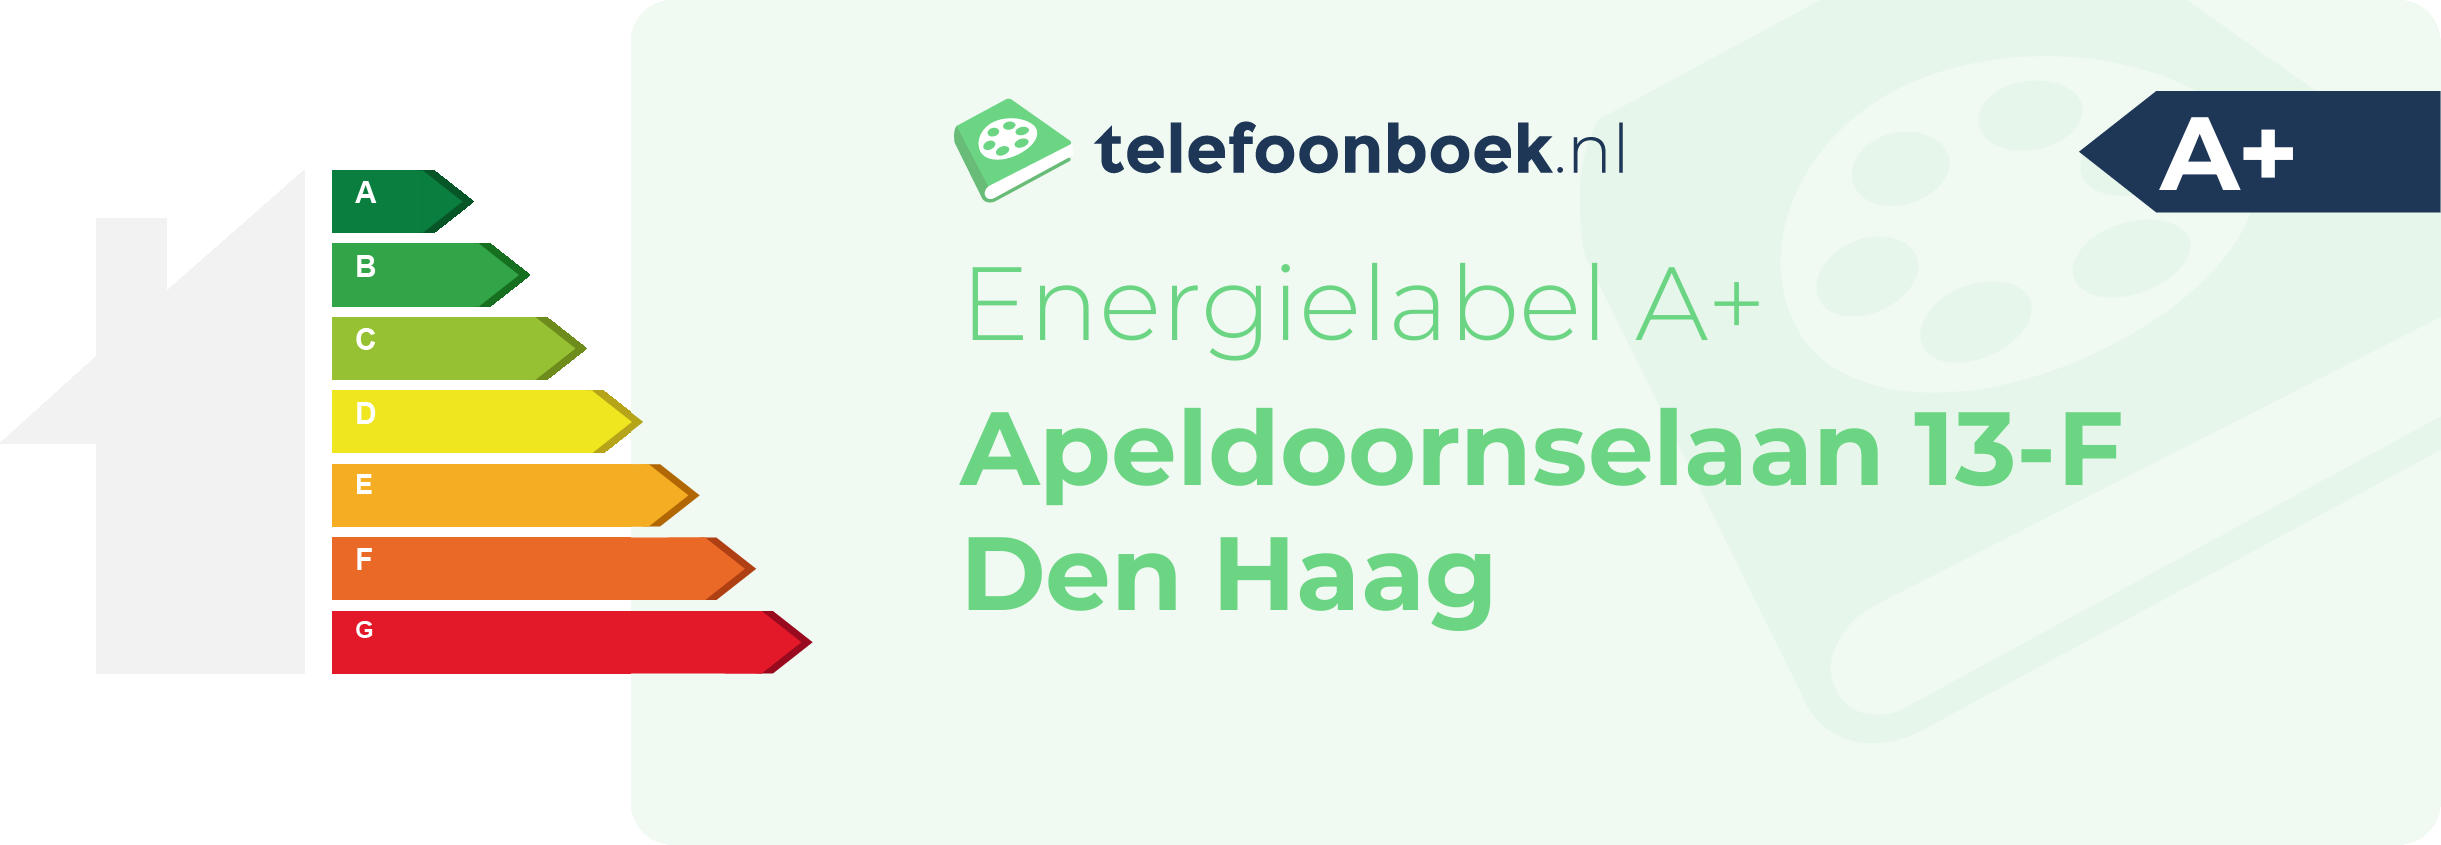 Energielabel Apeldoornselaan 13-F Den Haag